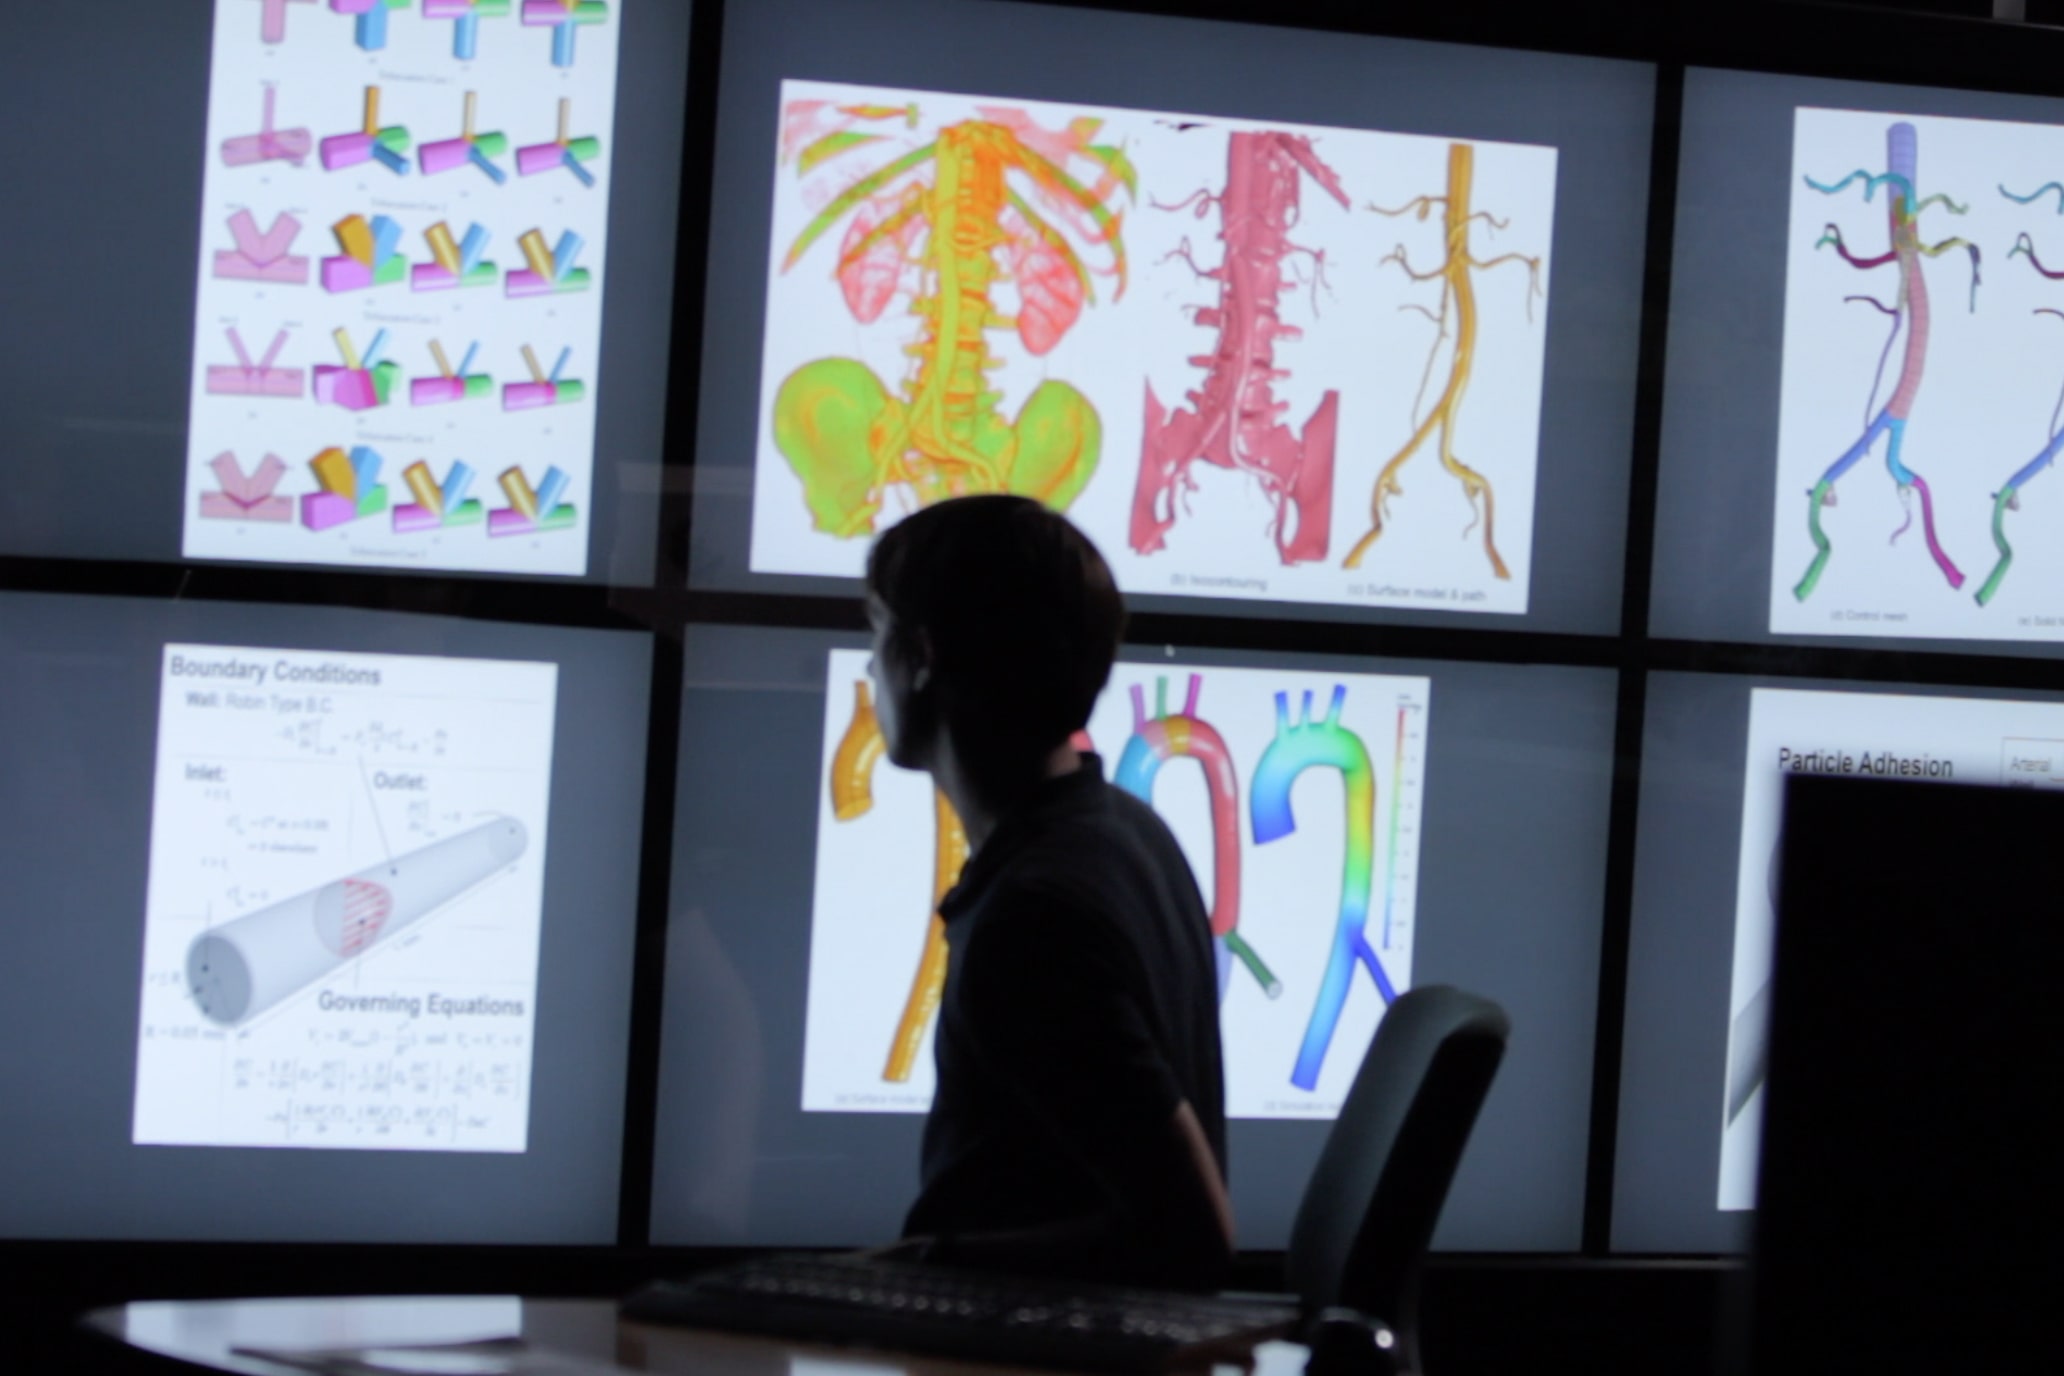 Texas computational engineering student looking at several monitors depicting human cells